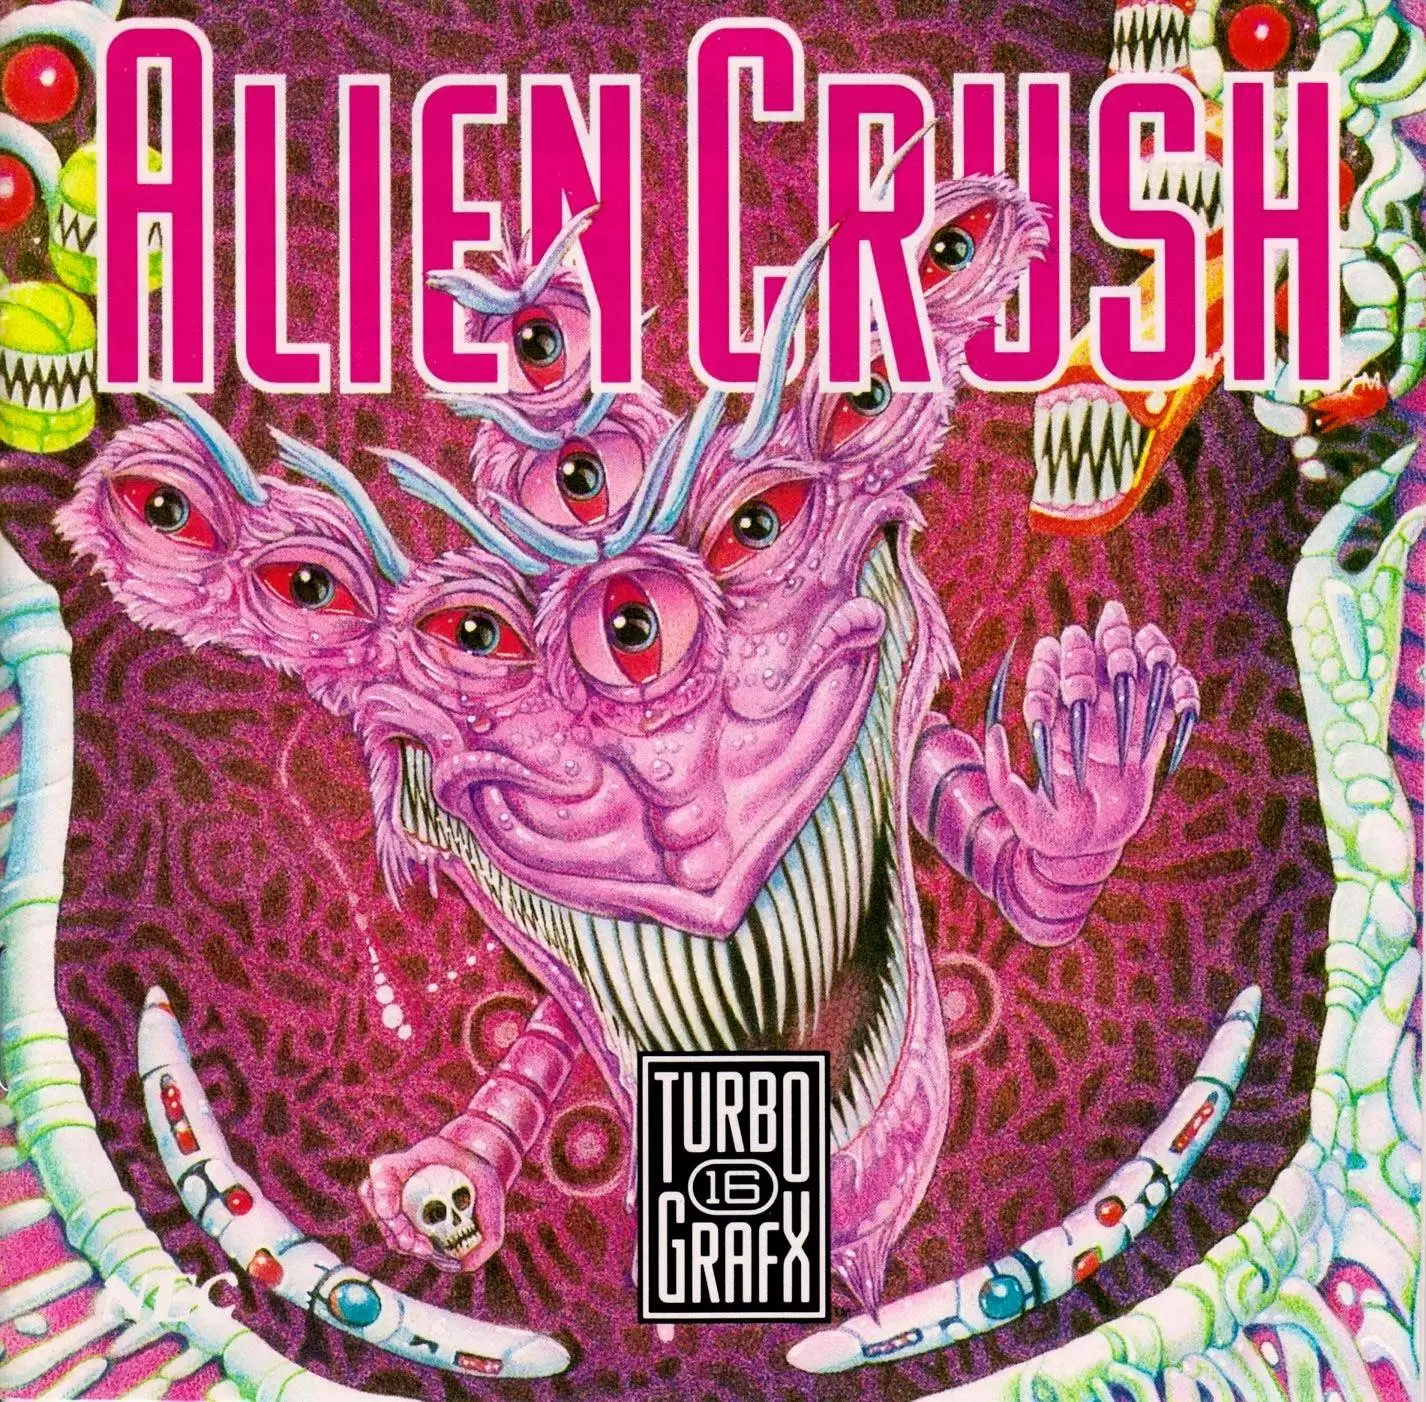 Turbo Grafx 16 - Alien Crush